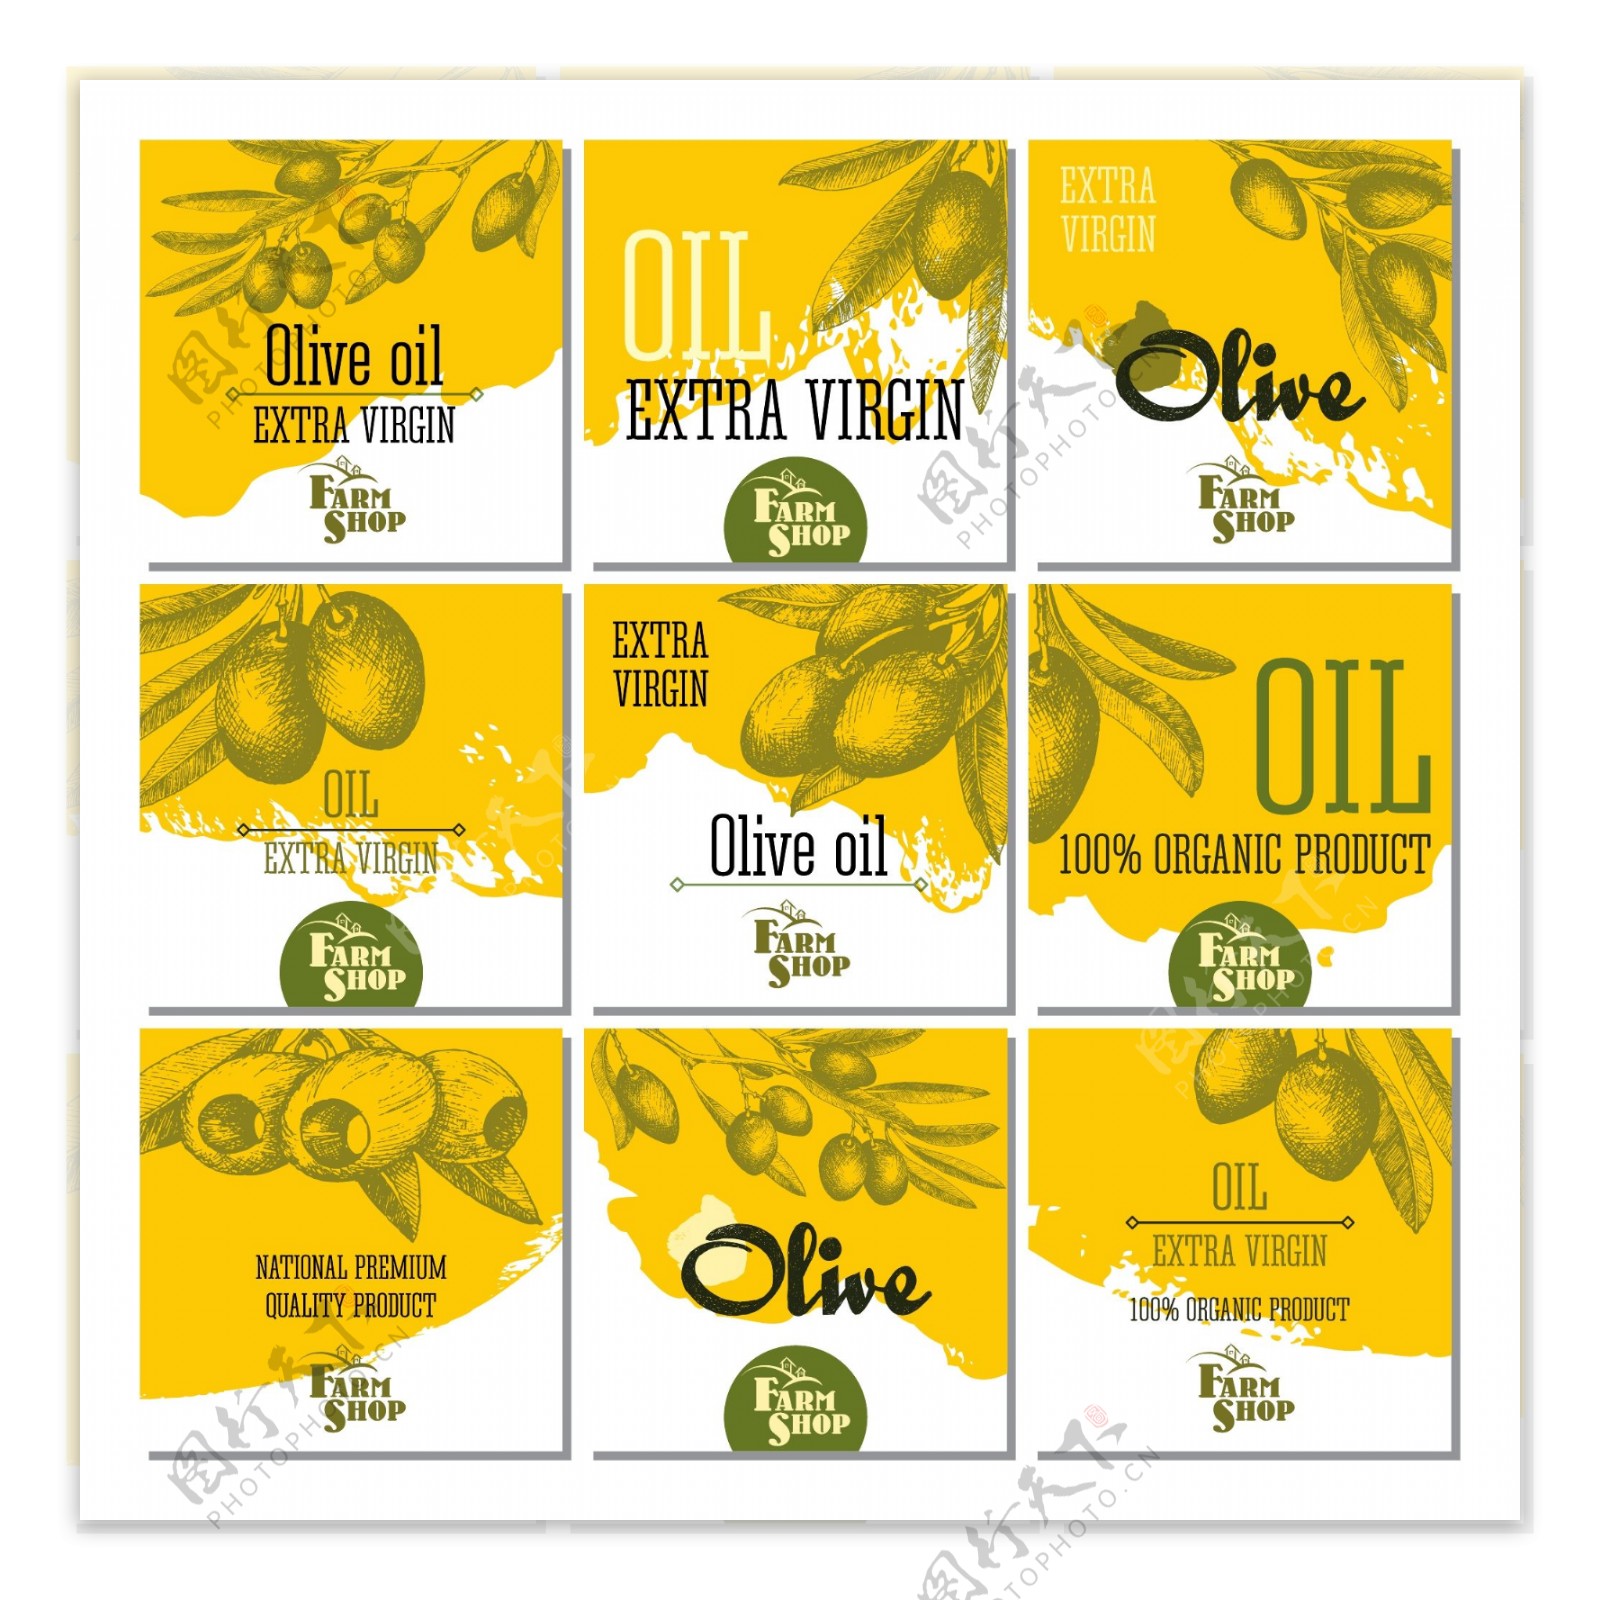 橄榄油广告